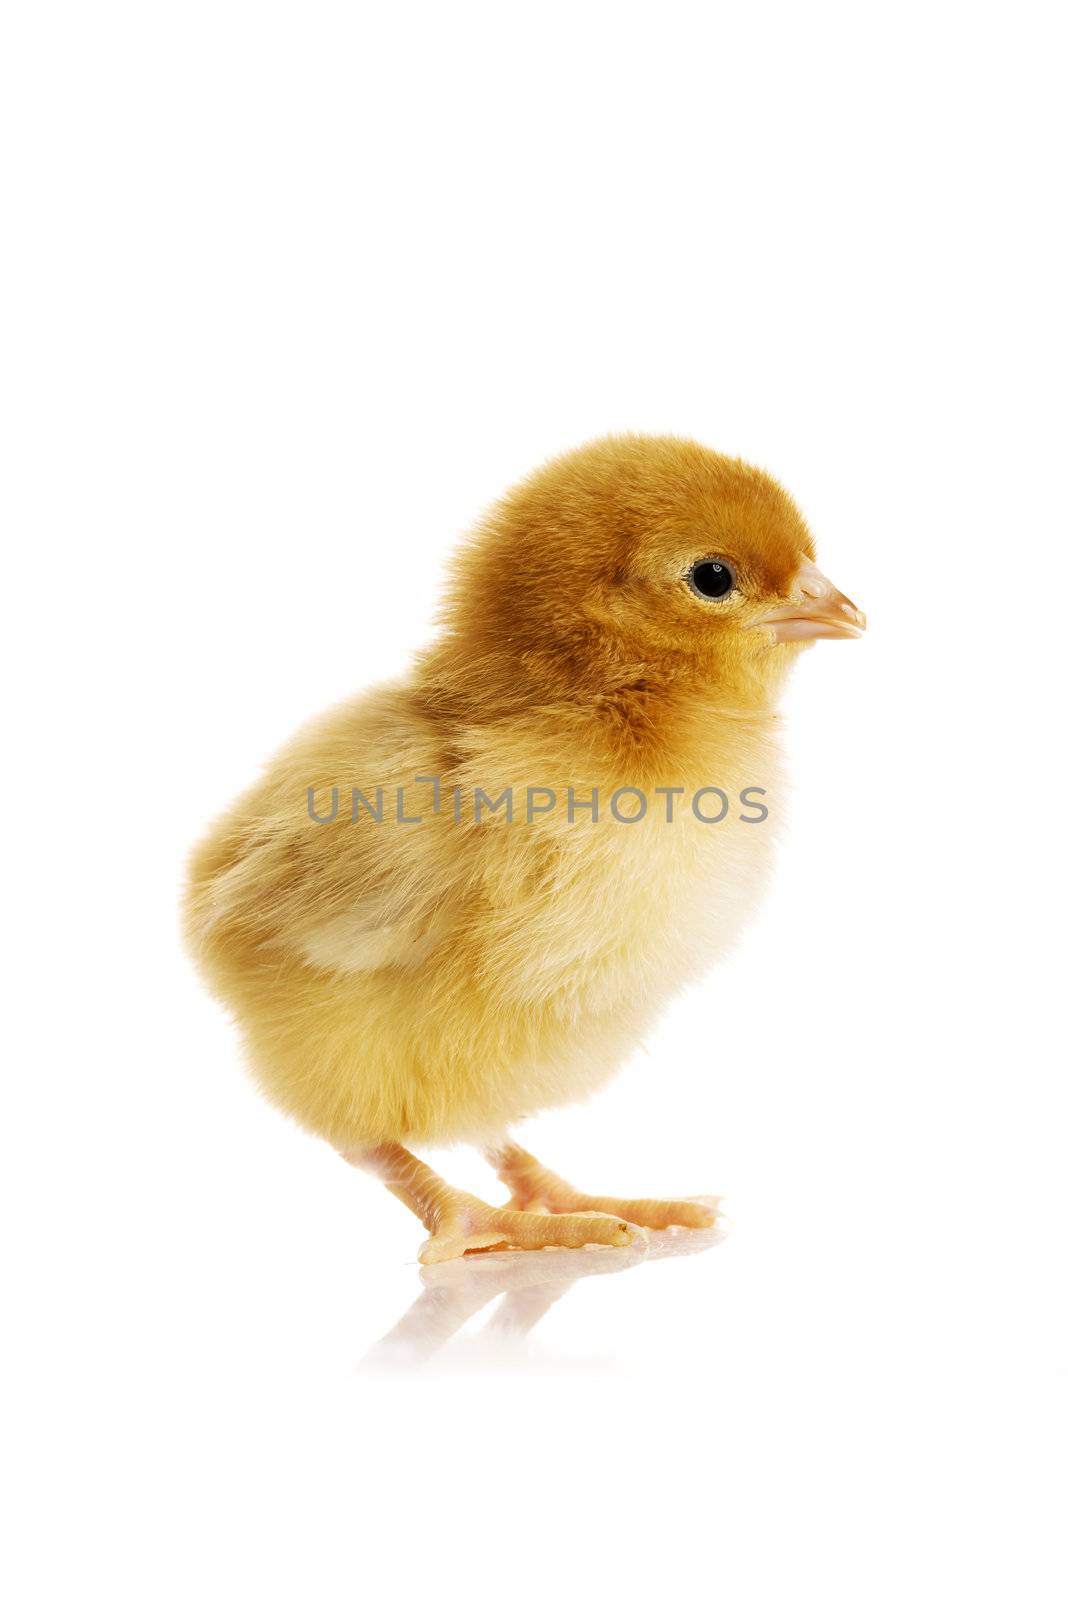 Little chicken by BDS